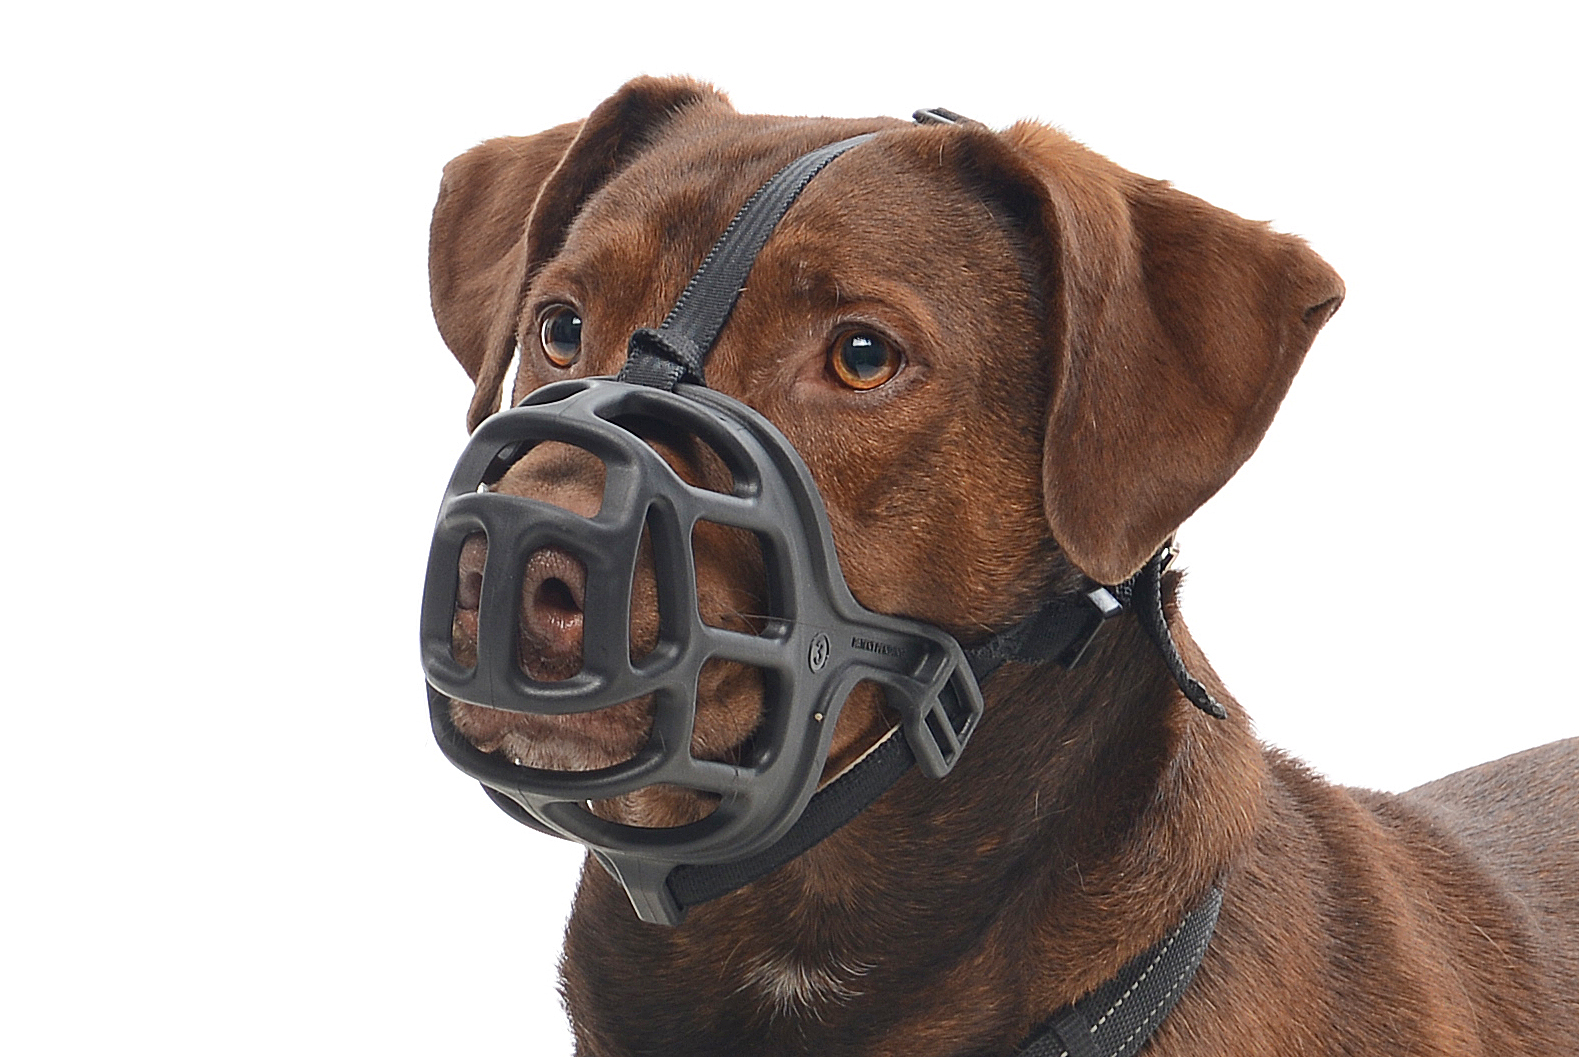 BUSTER Extreme dog muzzle, size 3